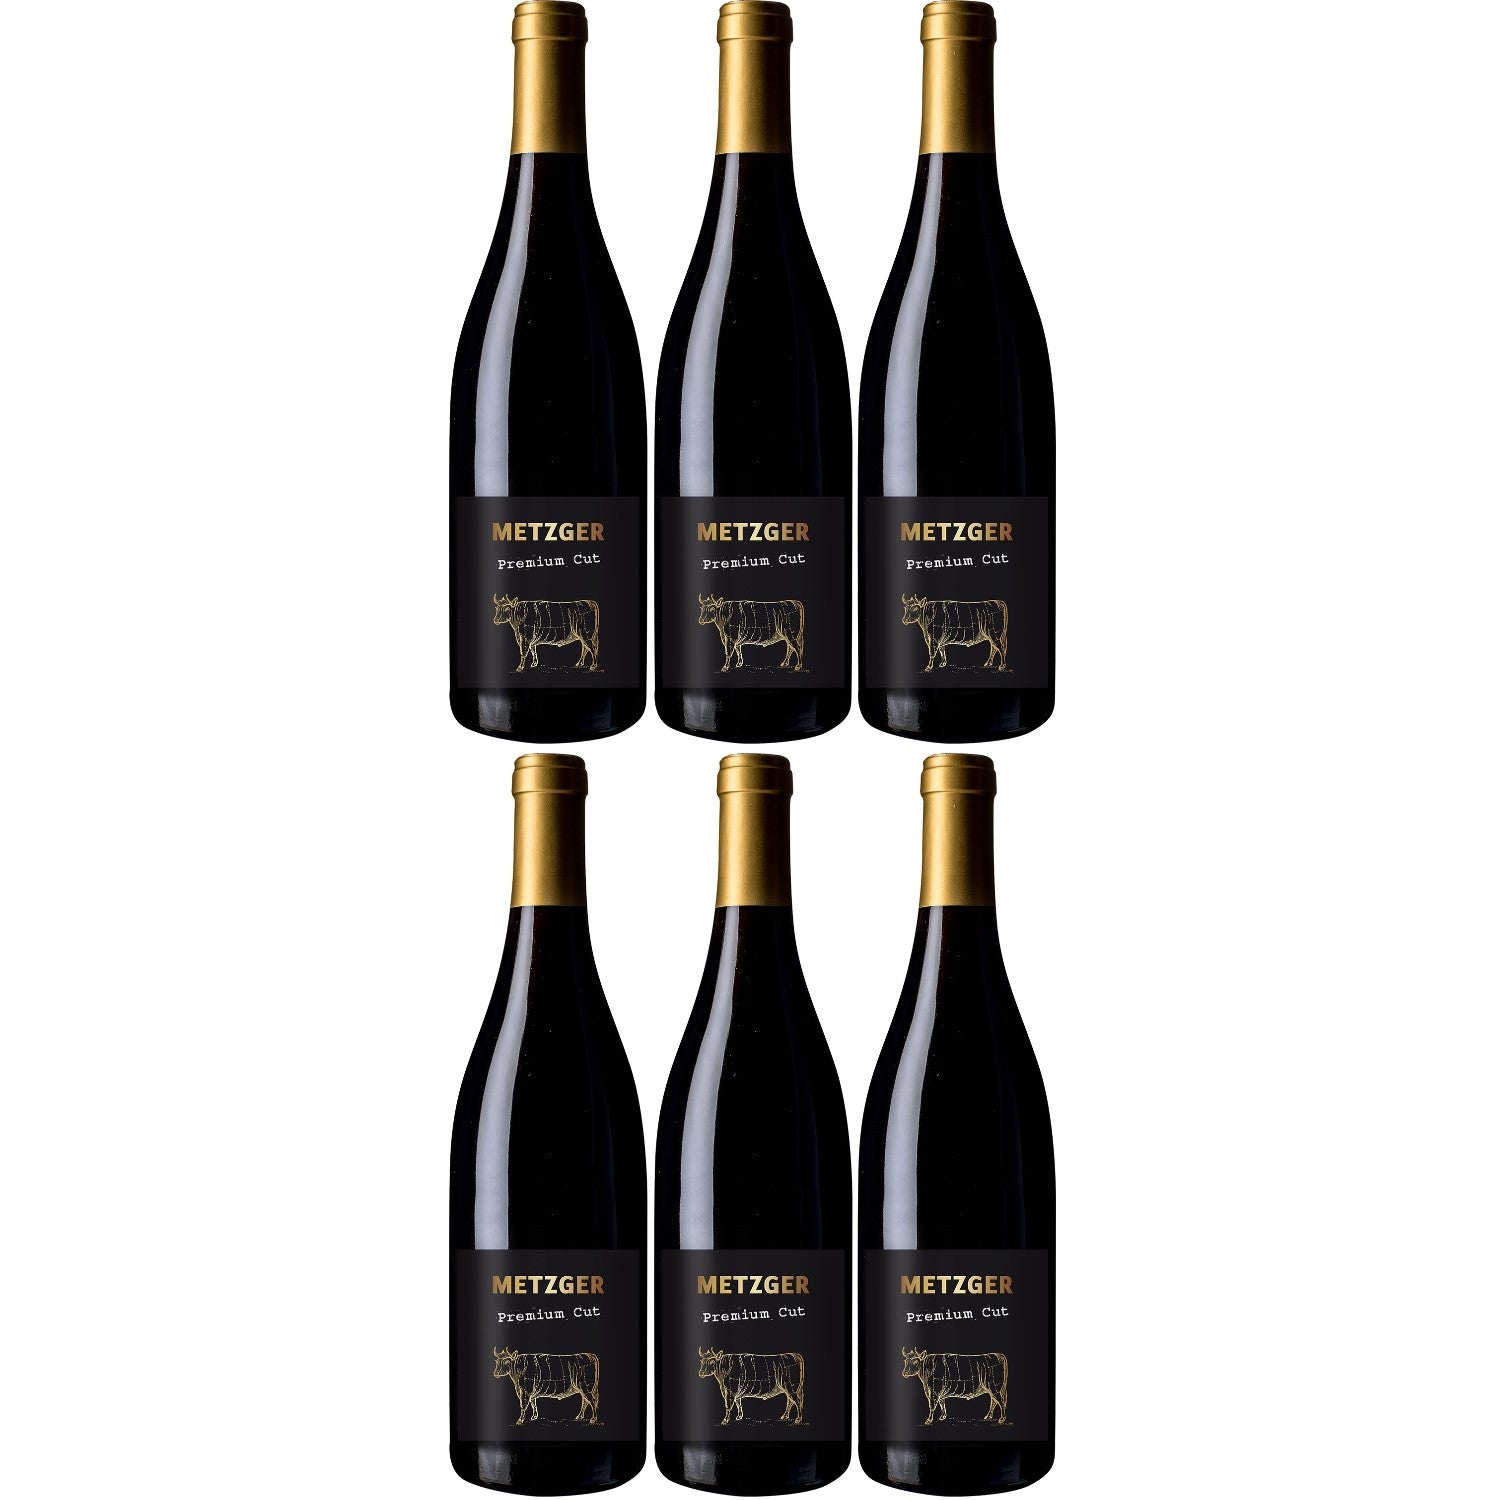 Metzger Premium Cut Pinot Noir QbA Rotwein Wein trocken Deutschland (6 x 0.75l) - Versanel -